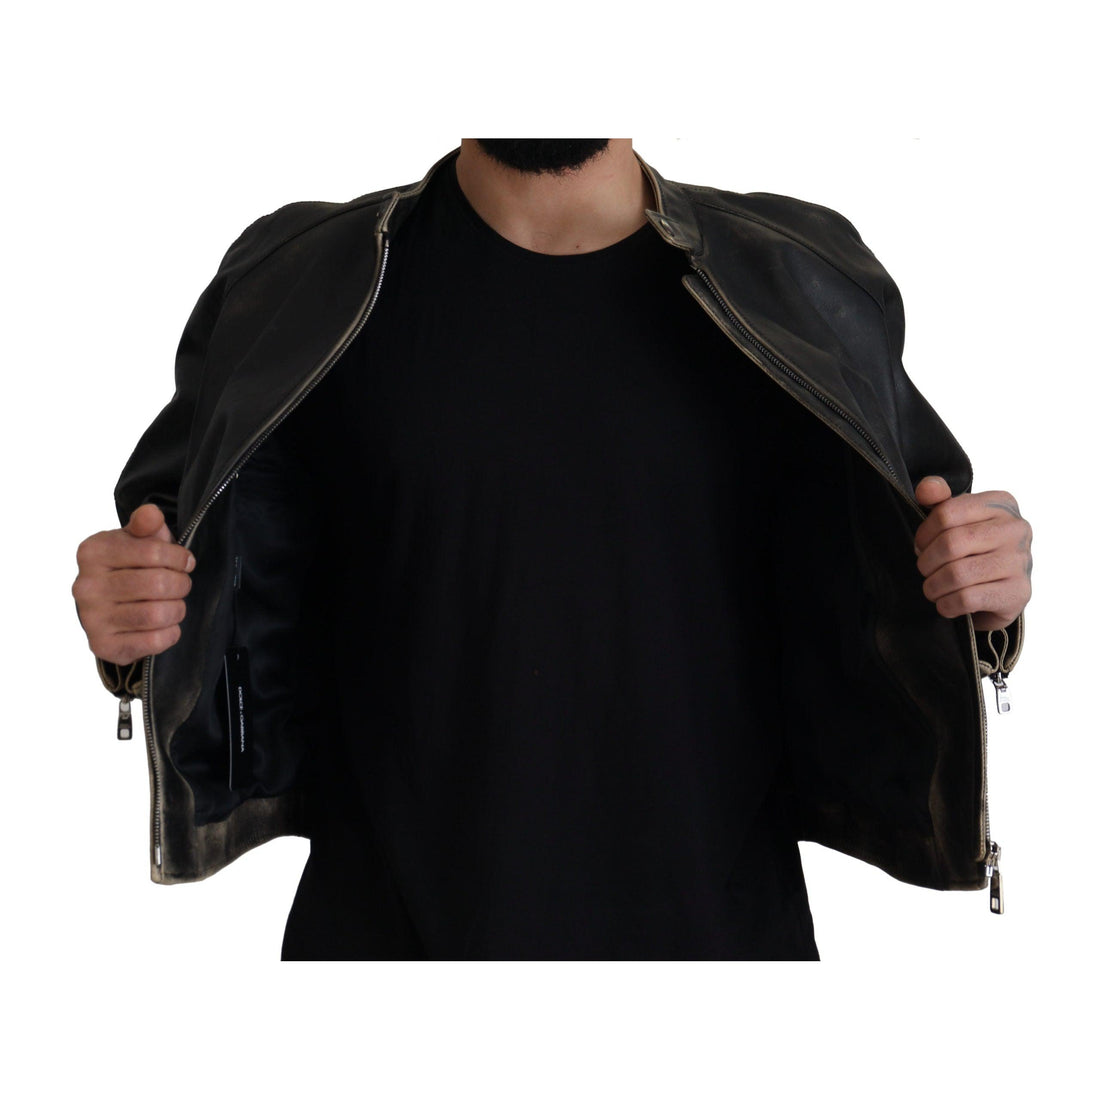 Dolce & Gabbana Elegant Black Leather Jacket with Silver Details